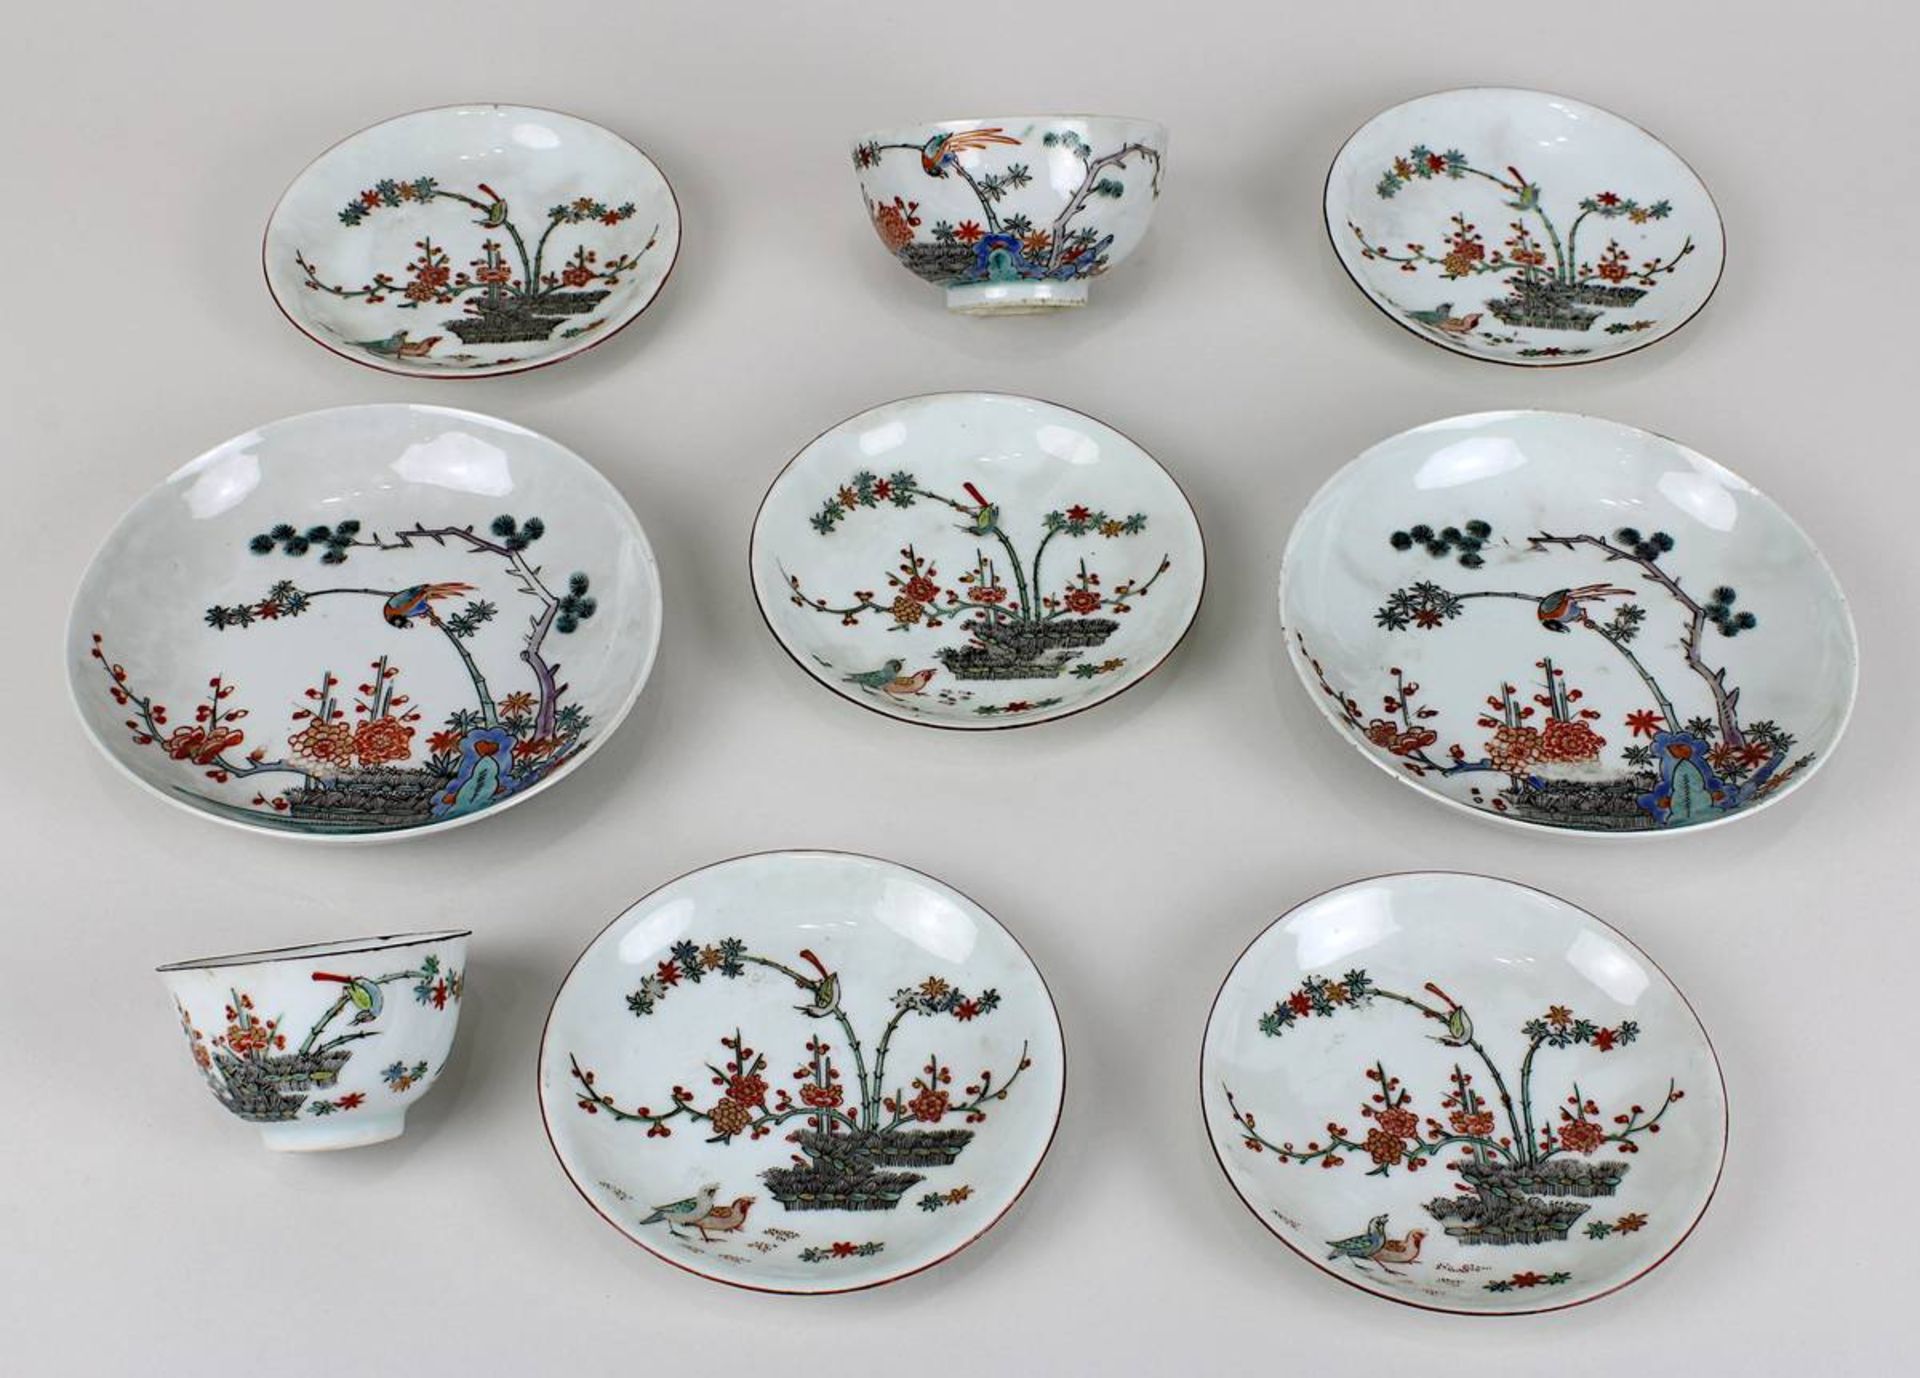 9 chinesische Porzellan-Geschirrteile 19. Jh., bestehend aus: 1 kleines Koppchen, 1 größeres